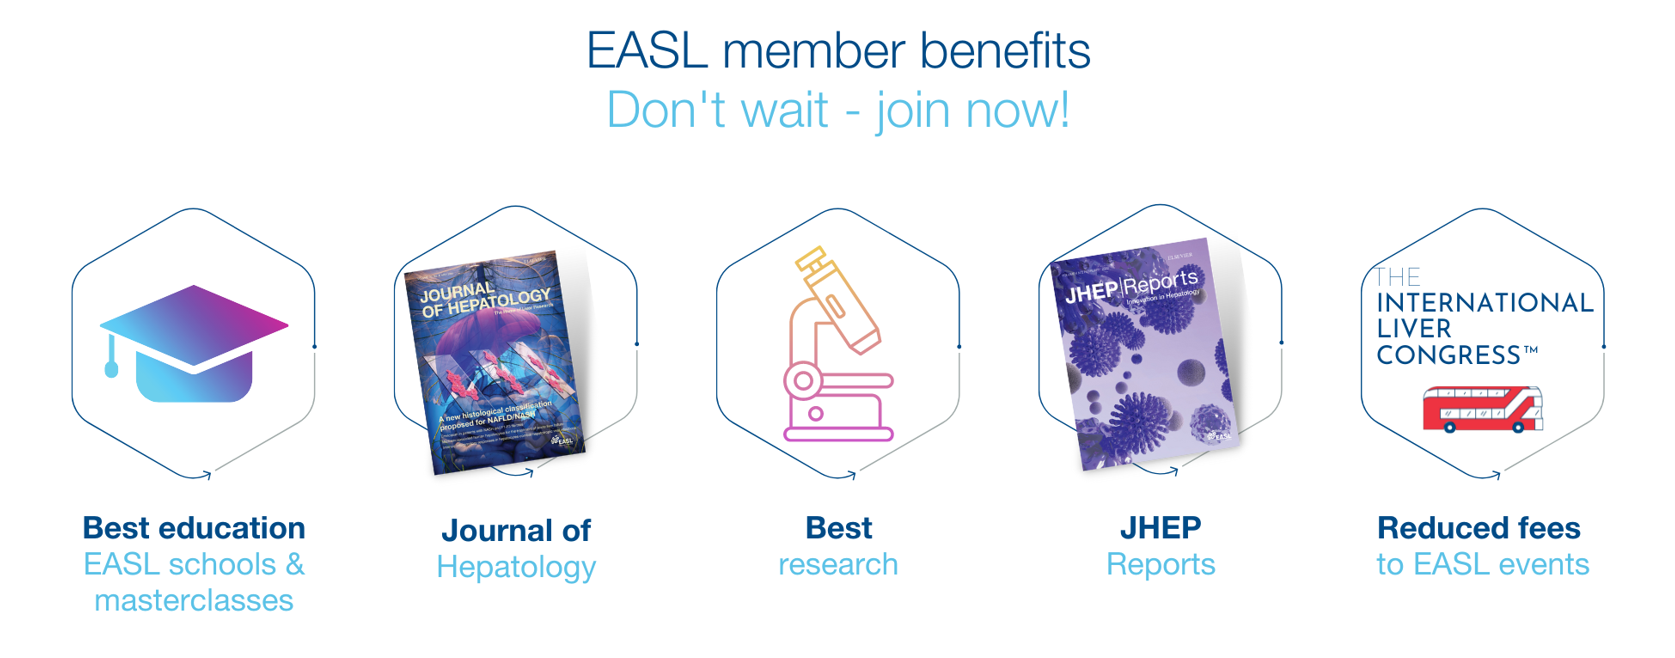 easl-member-benefits